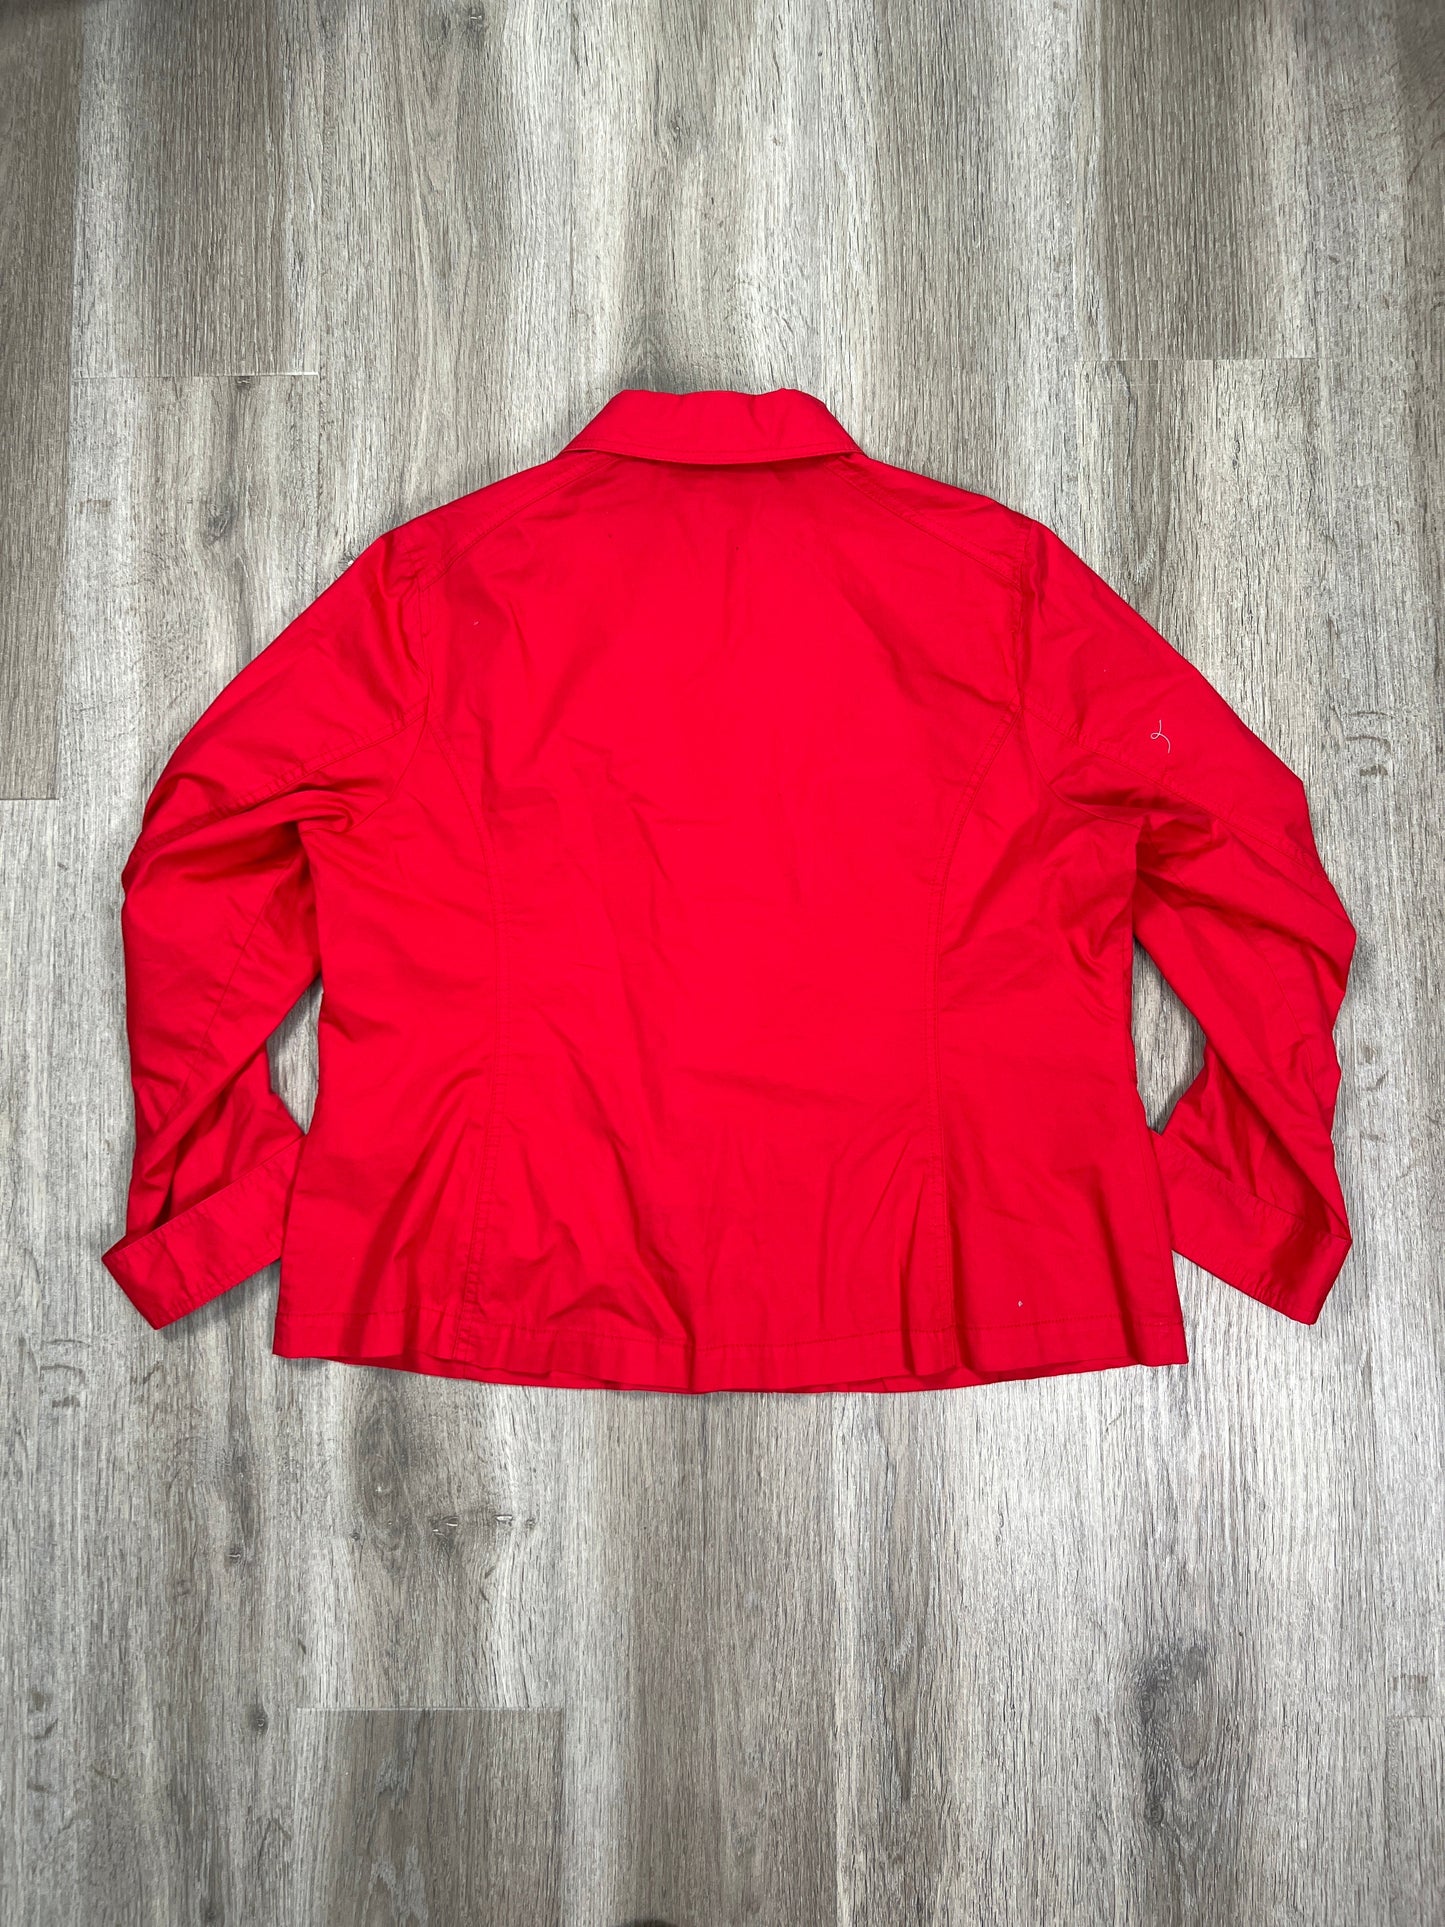 Jacket Windbreaker By Jones New York  Size: 1x